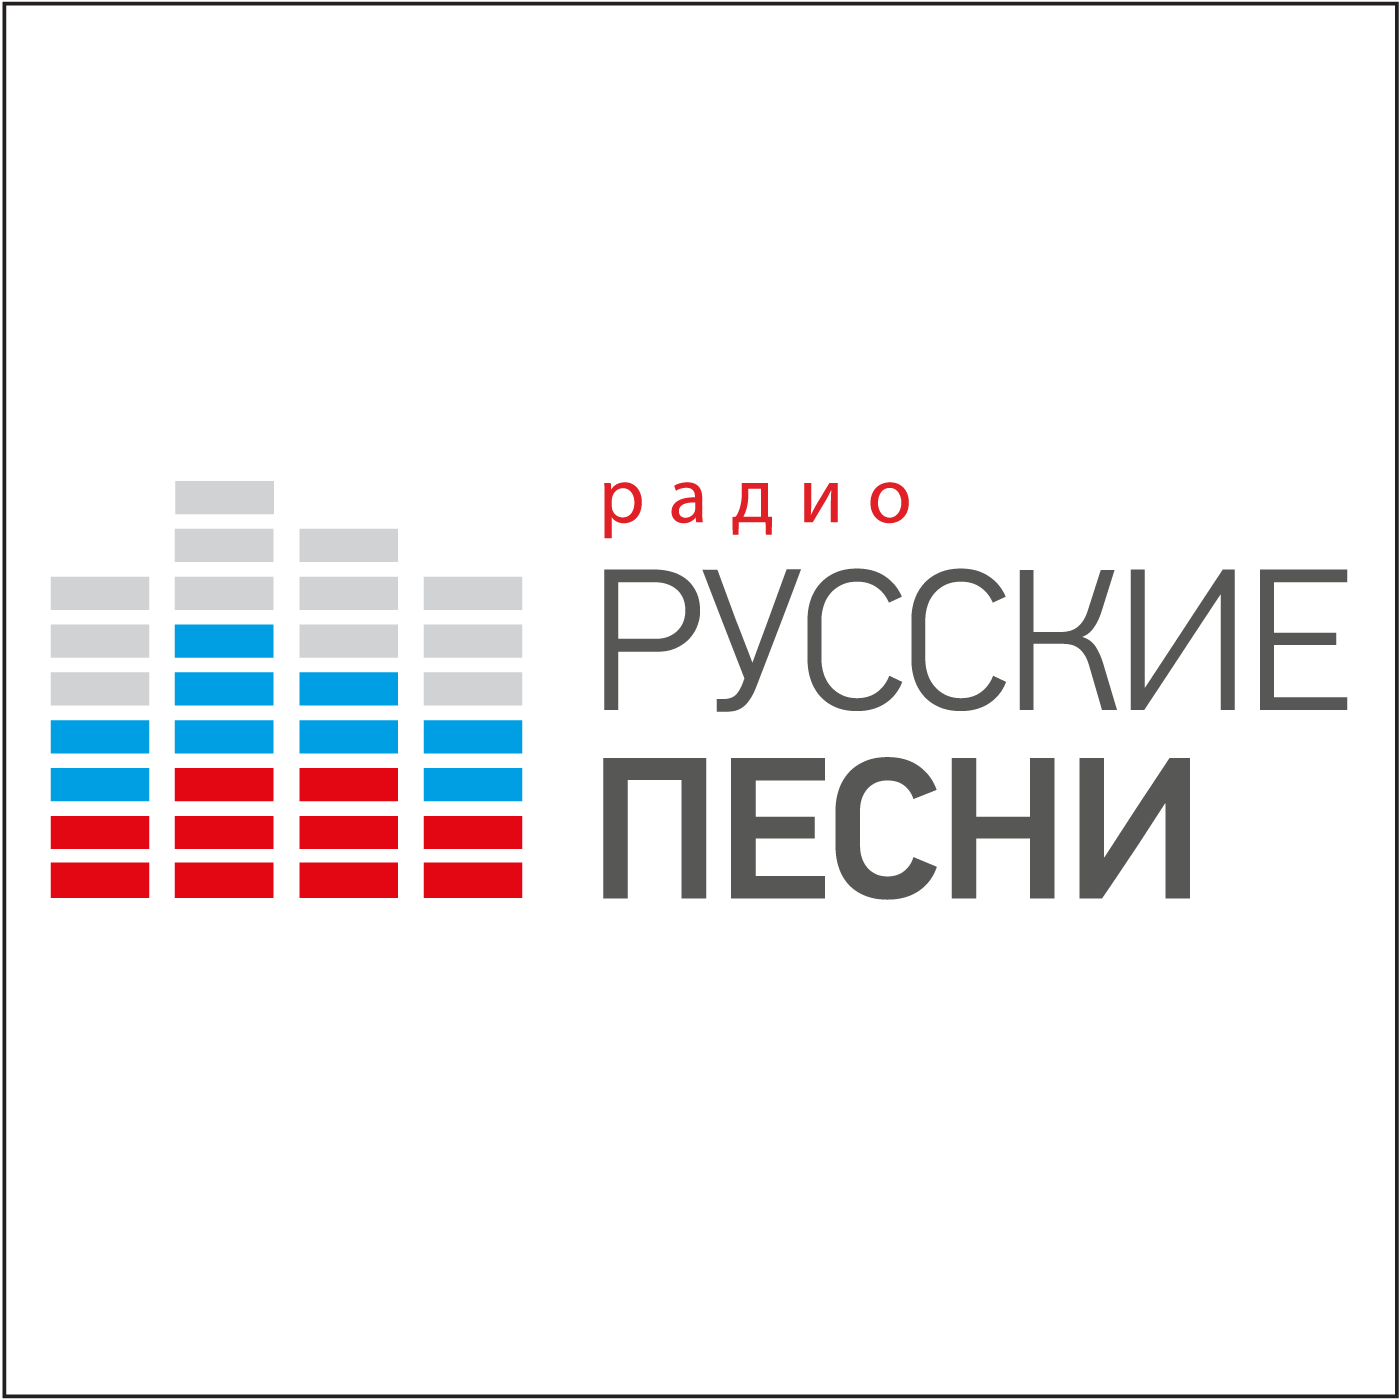 Включи гимн радио. Радио русские песни. Радио русские песни логотип. Радорускиэ. Российские музыкальные радиостанции.